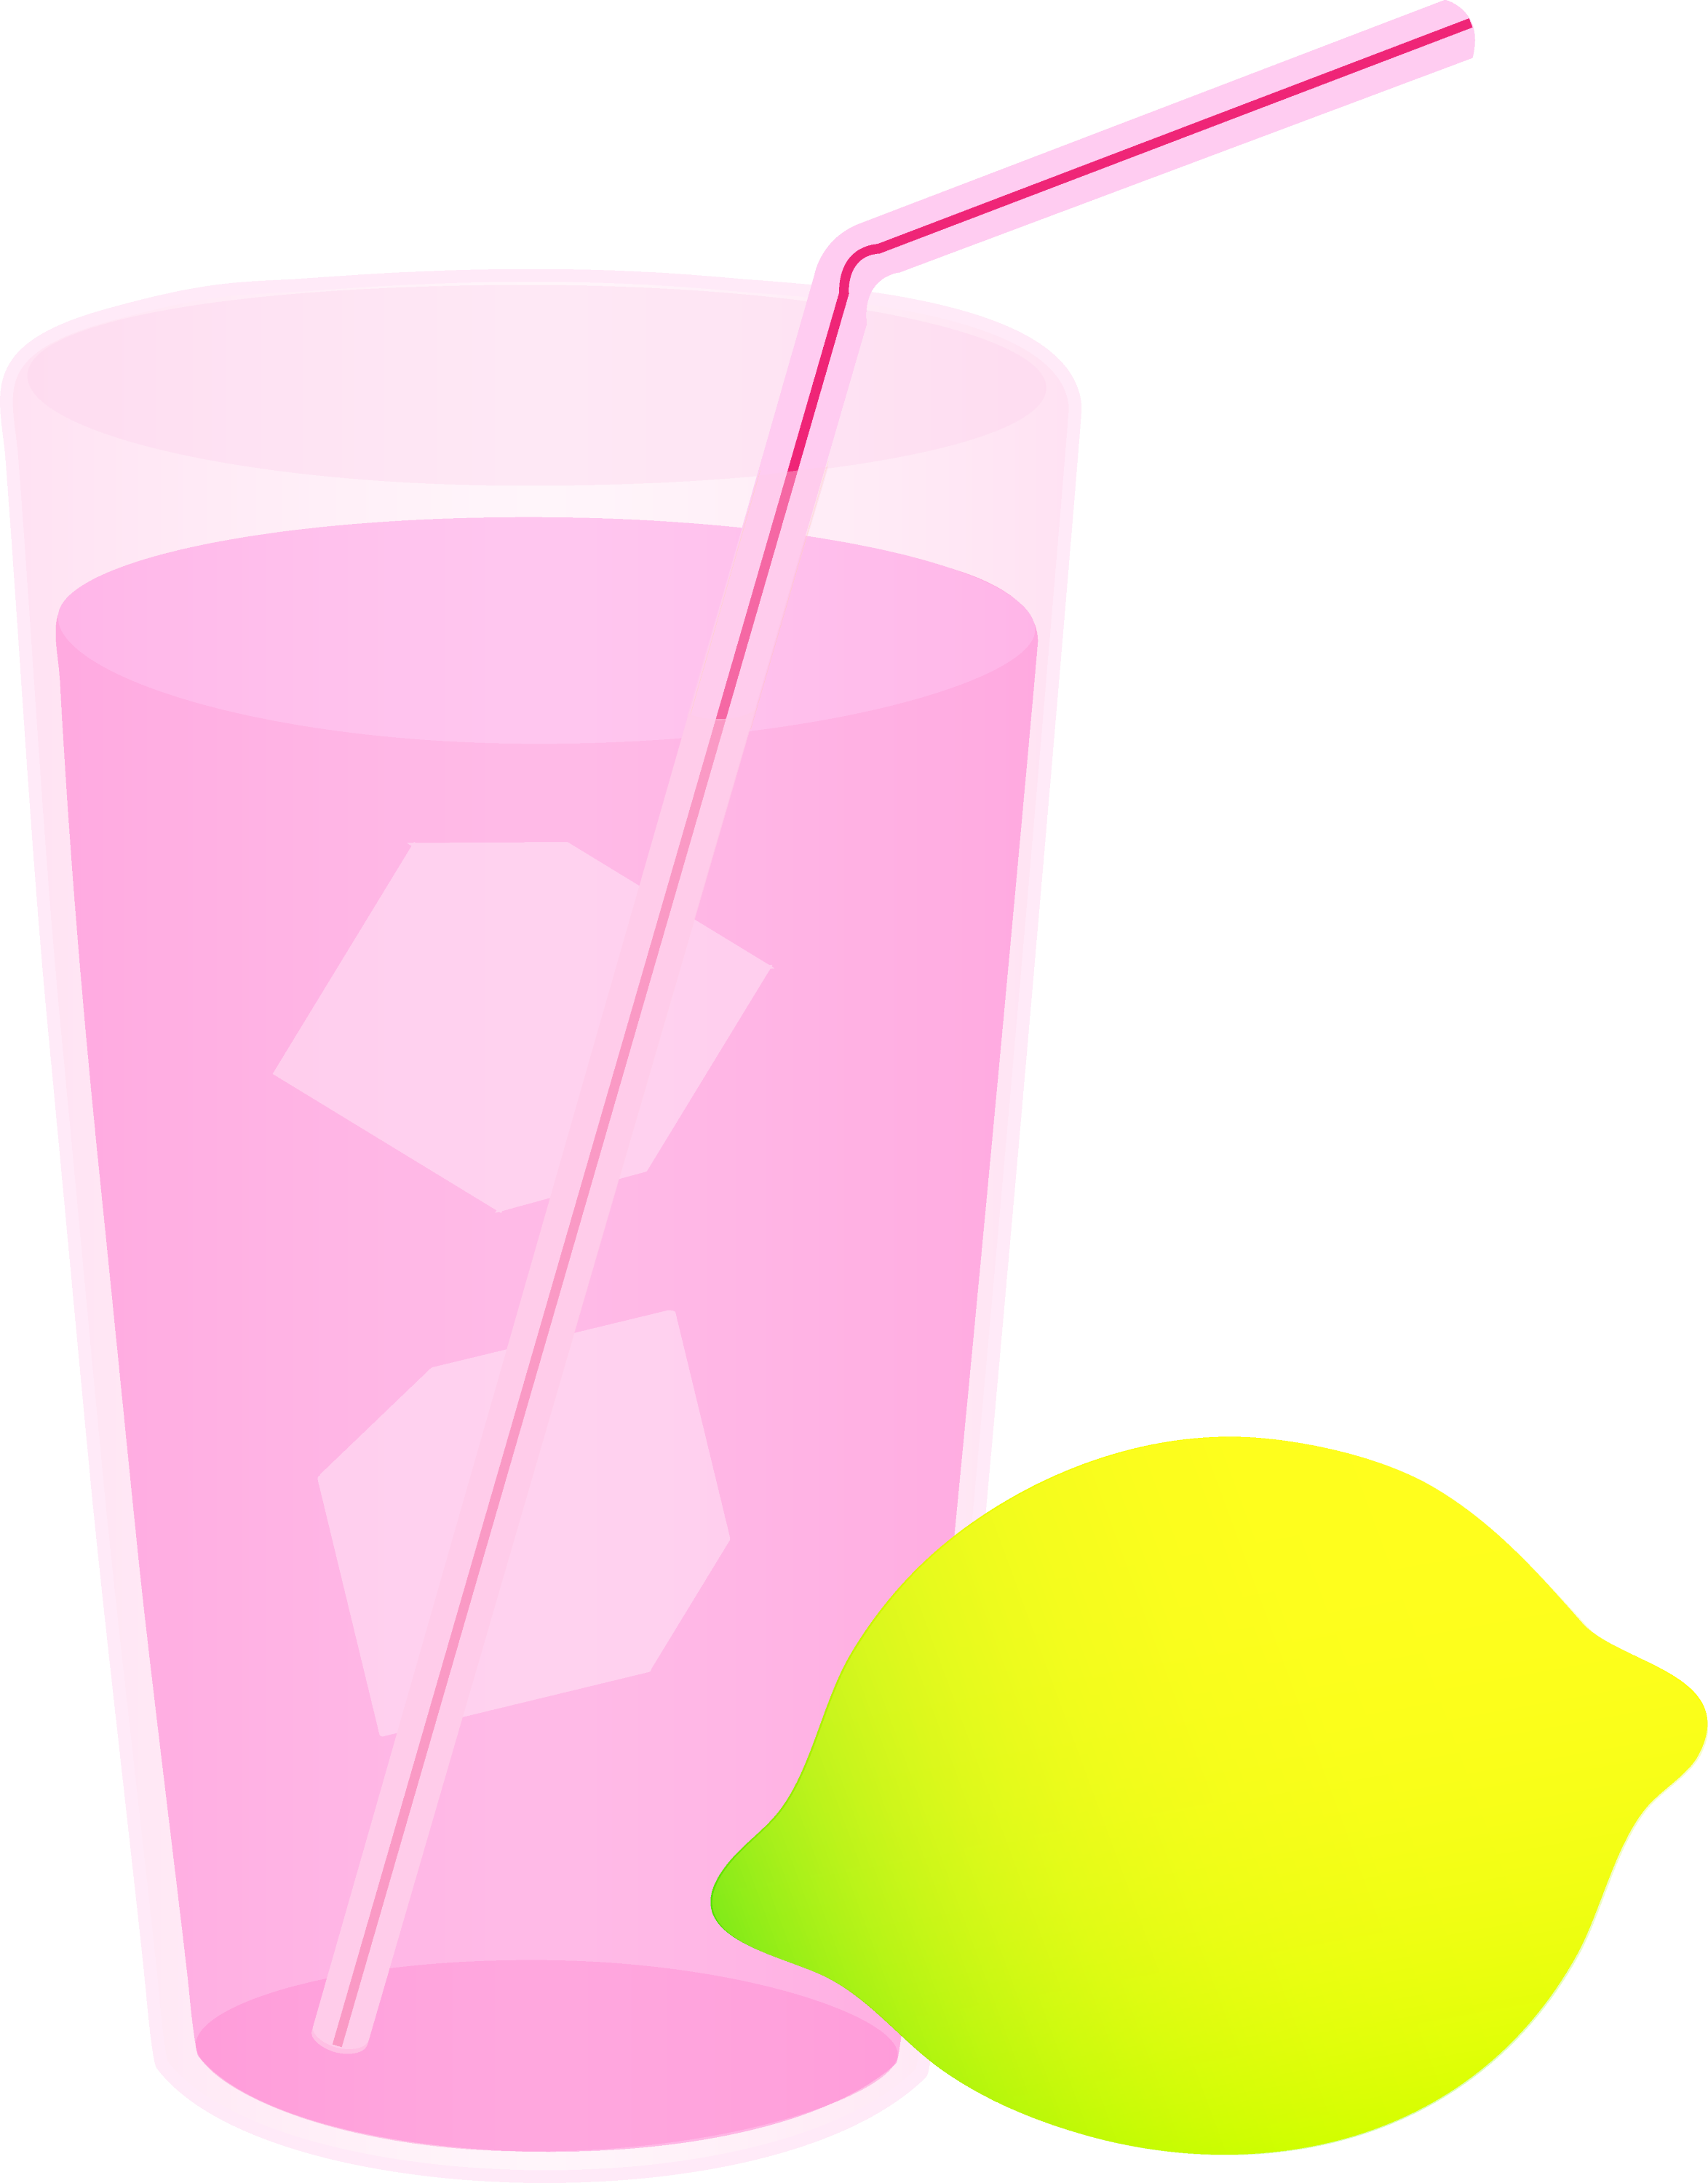 cup lemonade clipart - photo #49